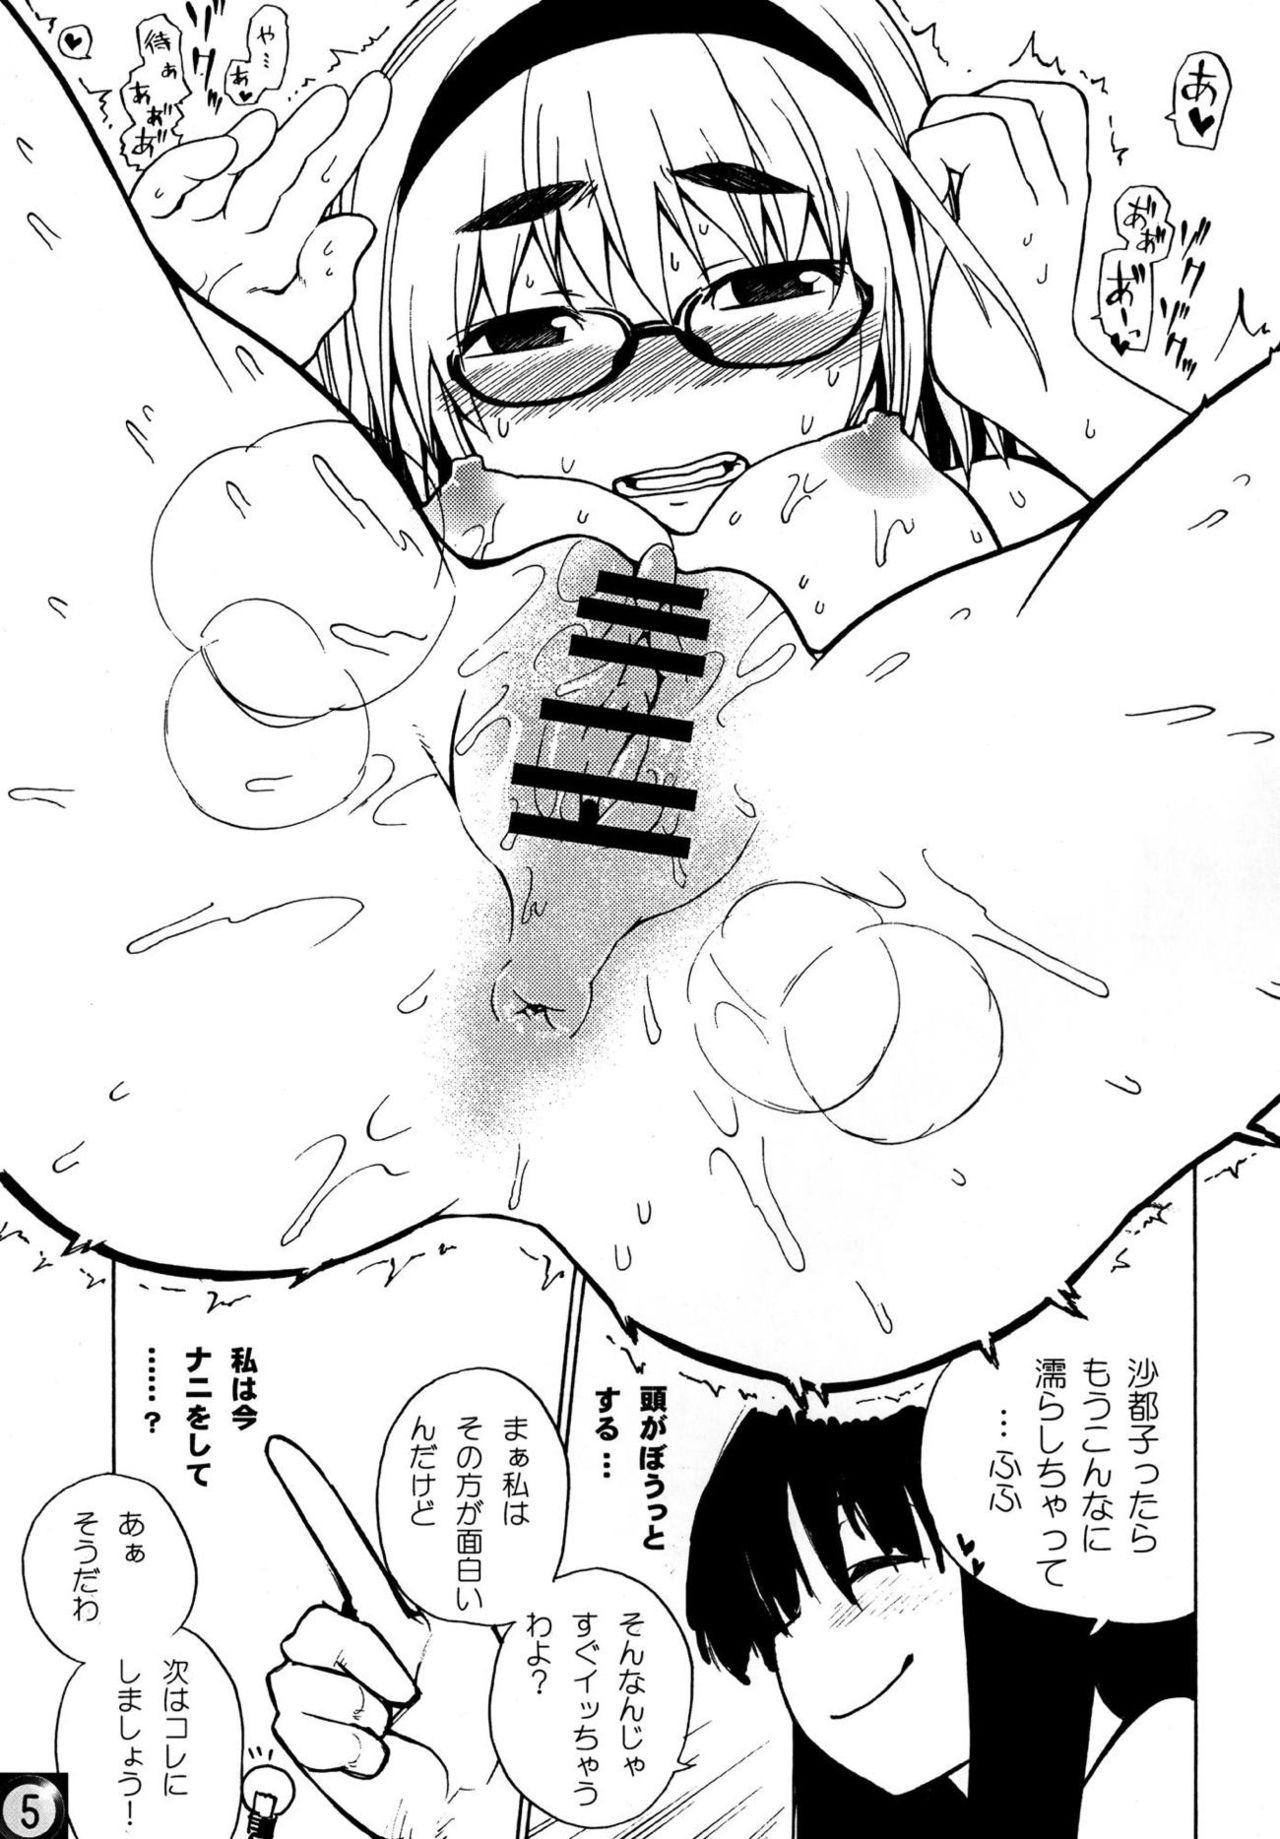 Public Ecchi ja Nai to Ikenai to Omoimasu!! - Higurashi no naku koro ni Uncut - Page 4